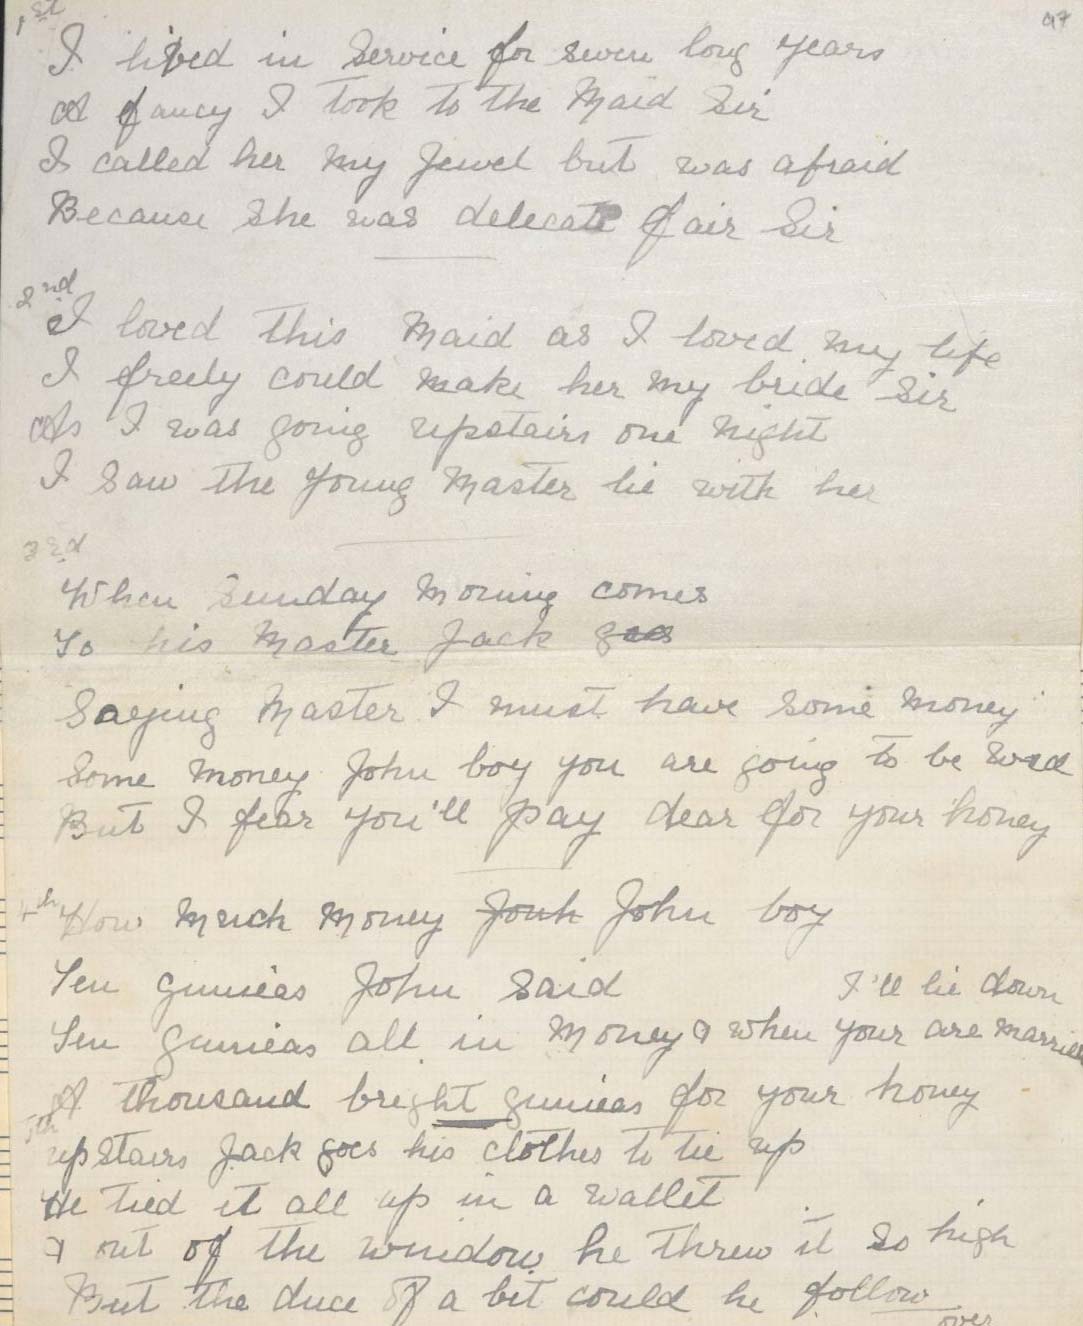 Handwritten lyrics for "I've Lived in Service"